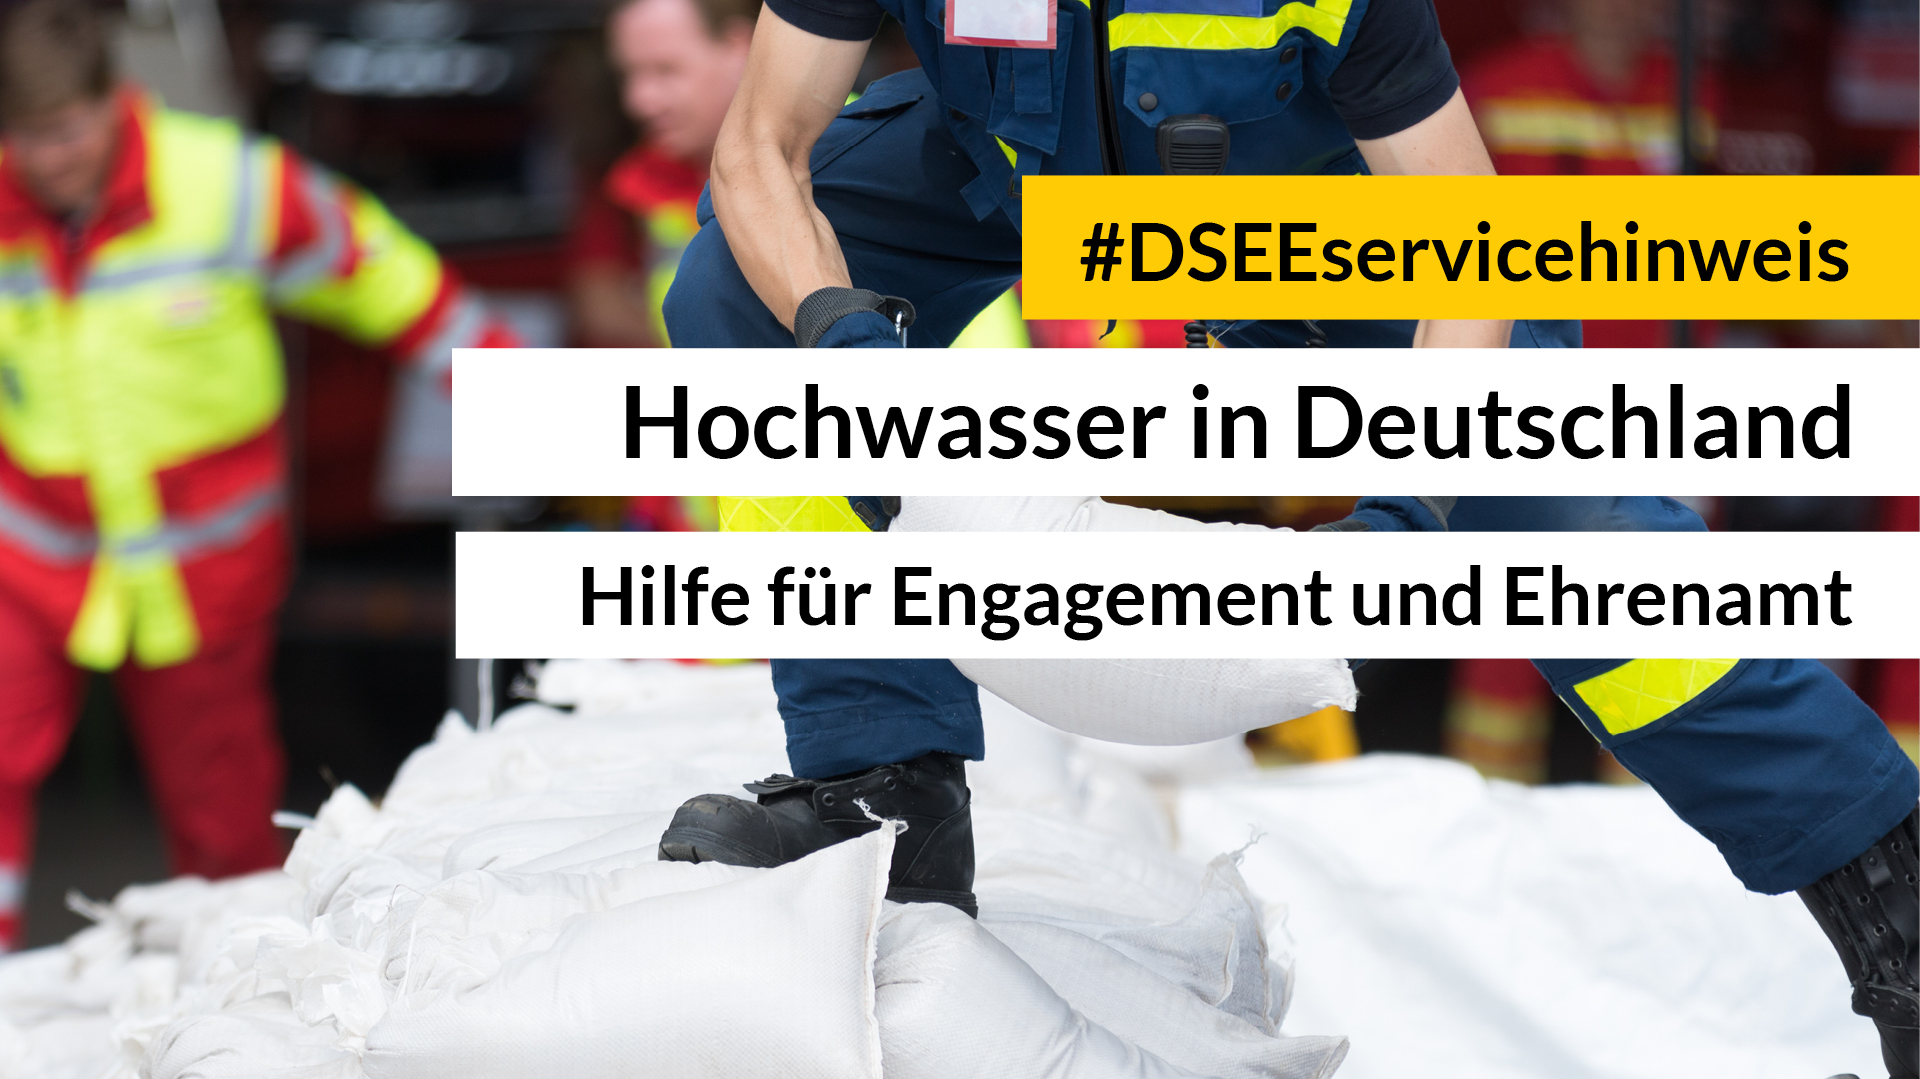 Feuerwehrmann reicht Sandsack weiter. Aufschrift: #DSEEservicehinweis Hochwasserkatastrophe. Unterstützung vor Ort